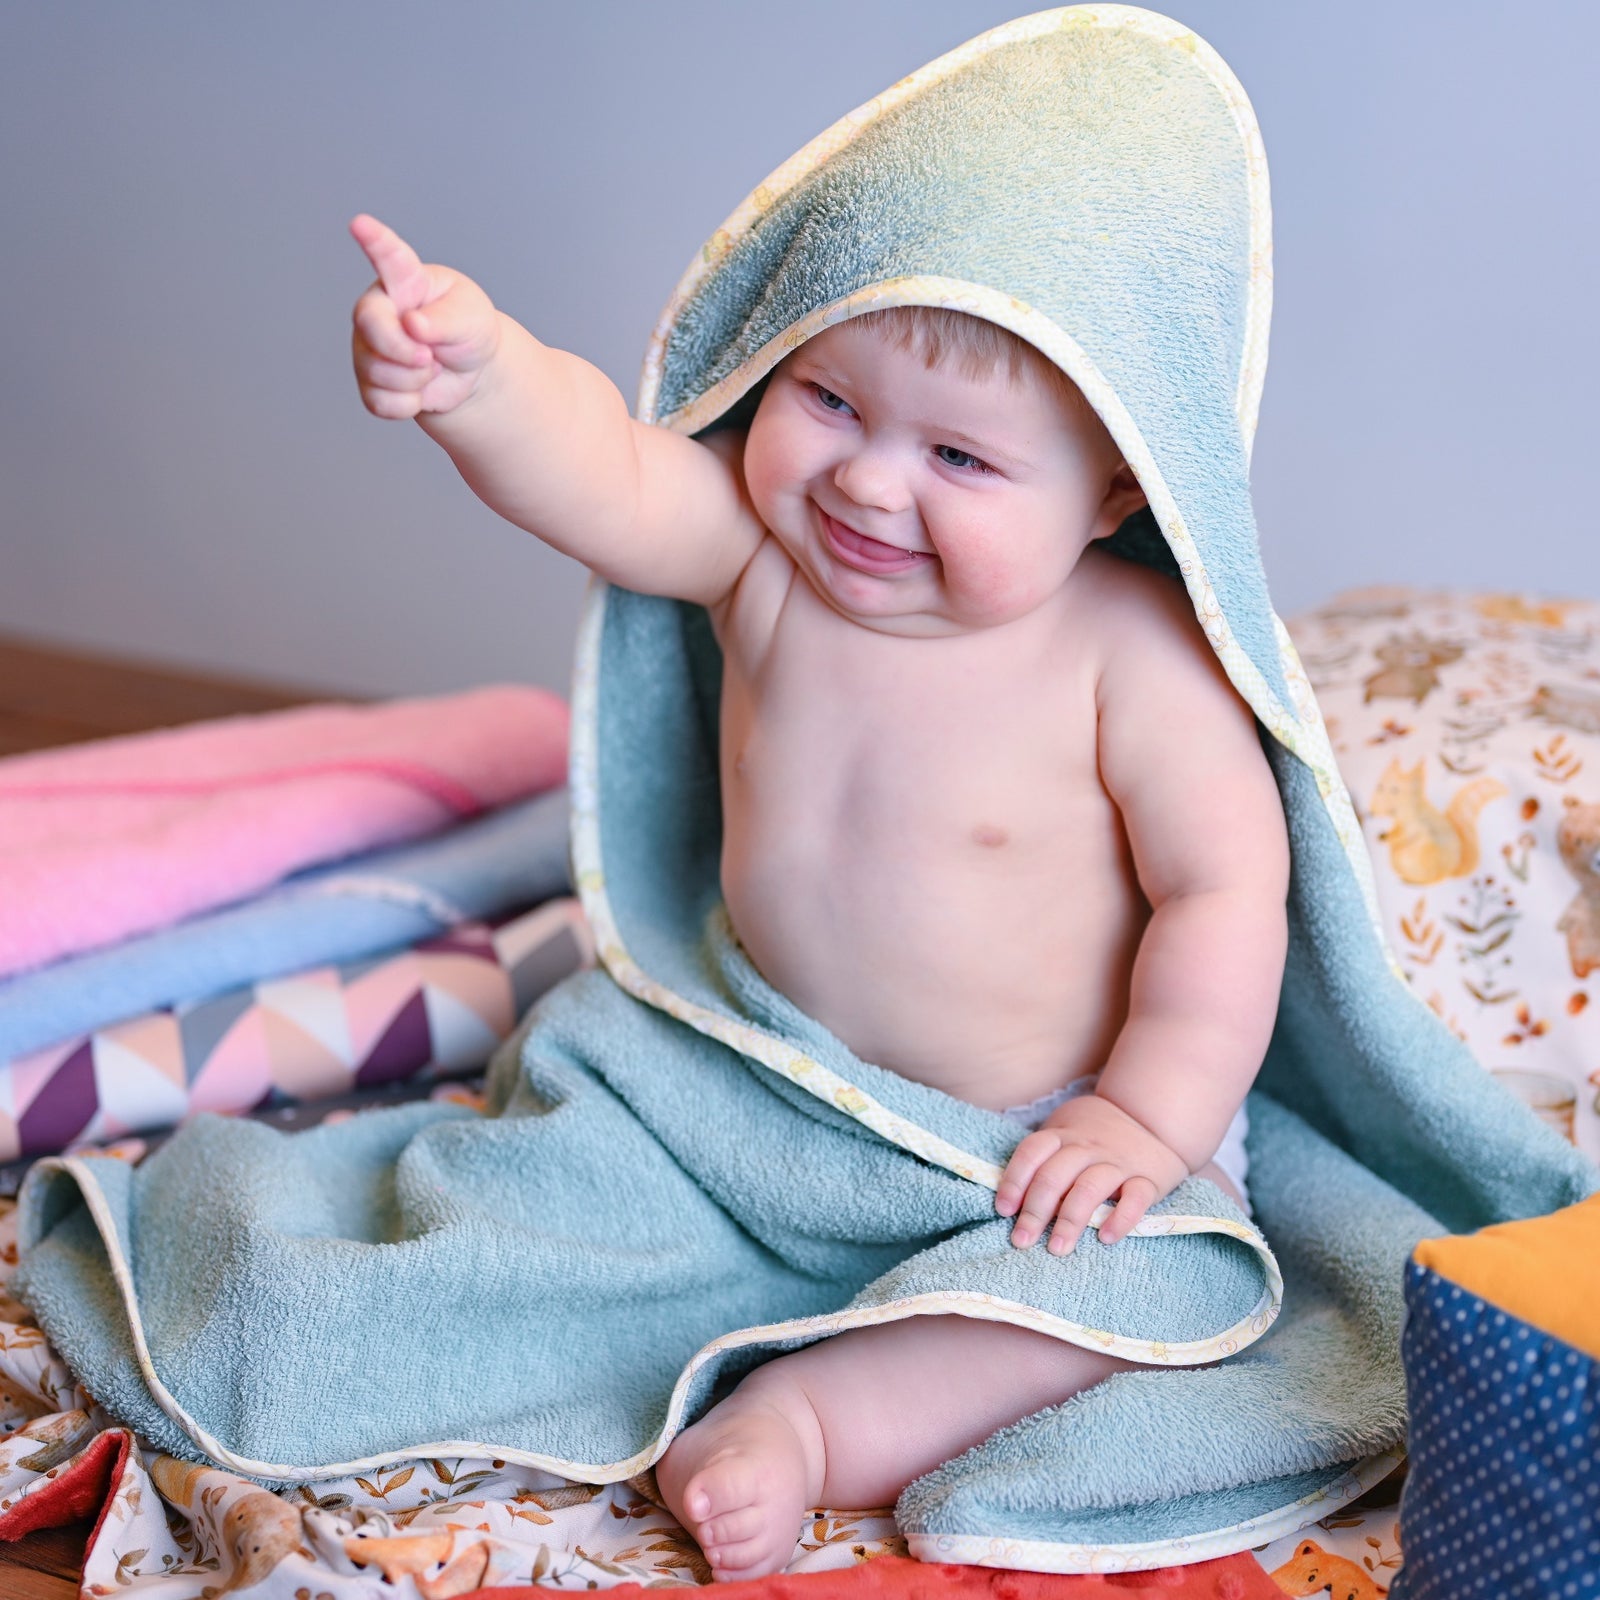 Babyhandtuch mit Kapuze / Cape de bain pour bébé